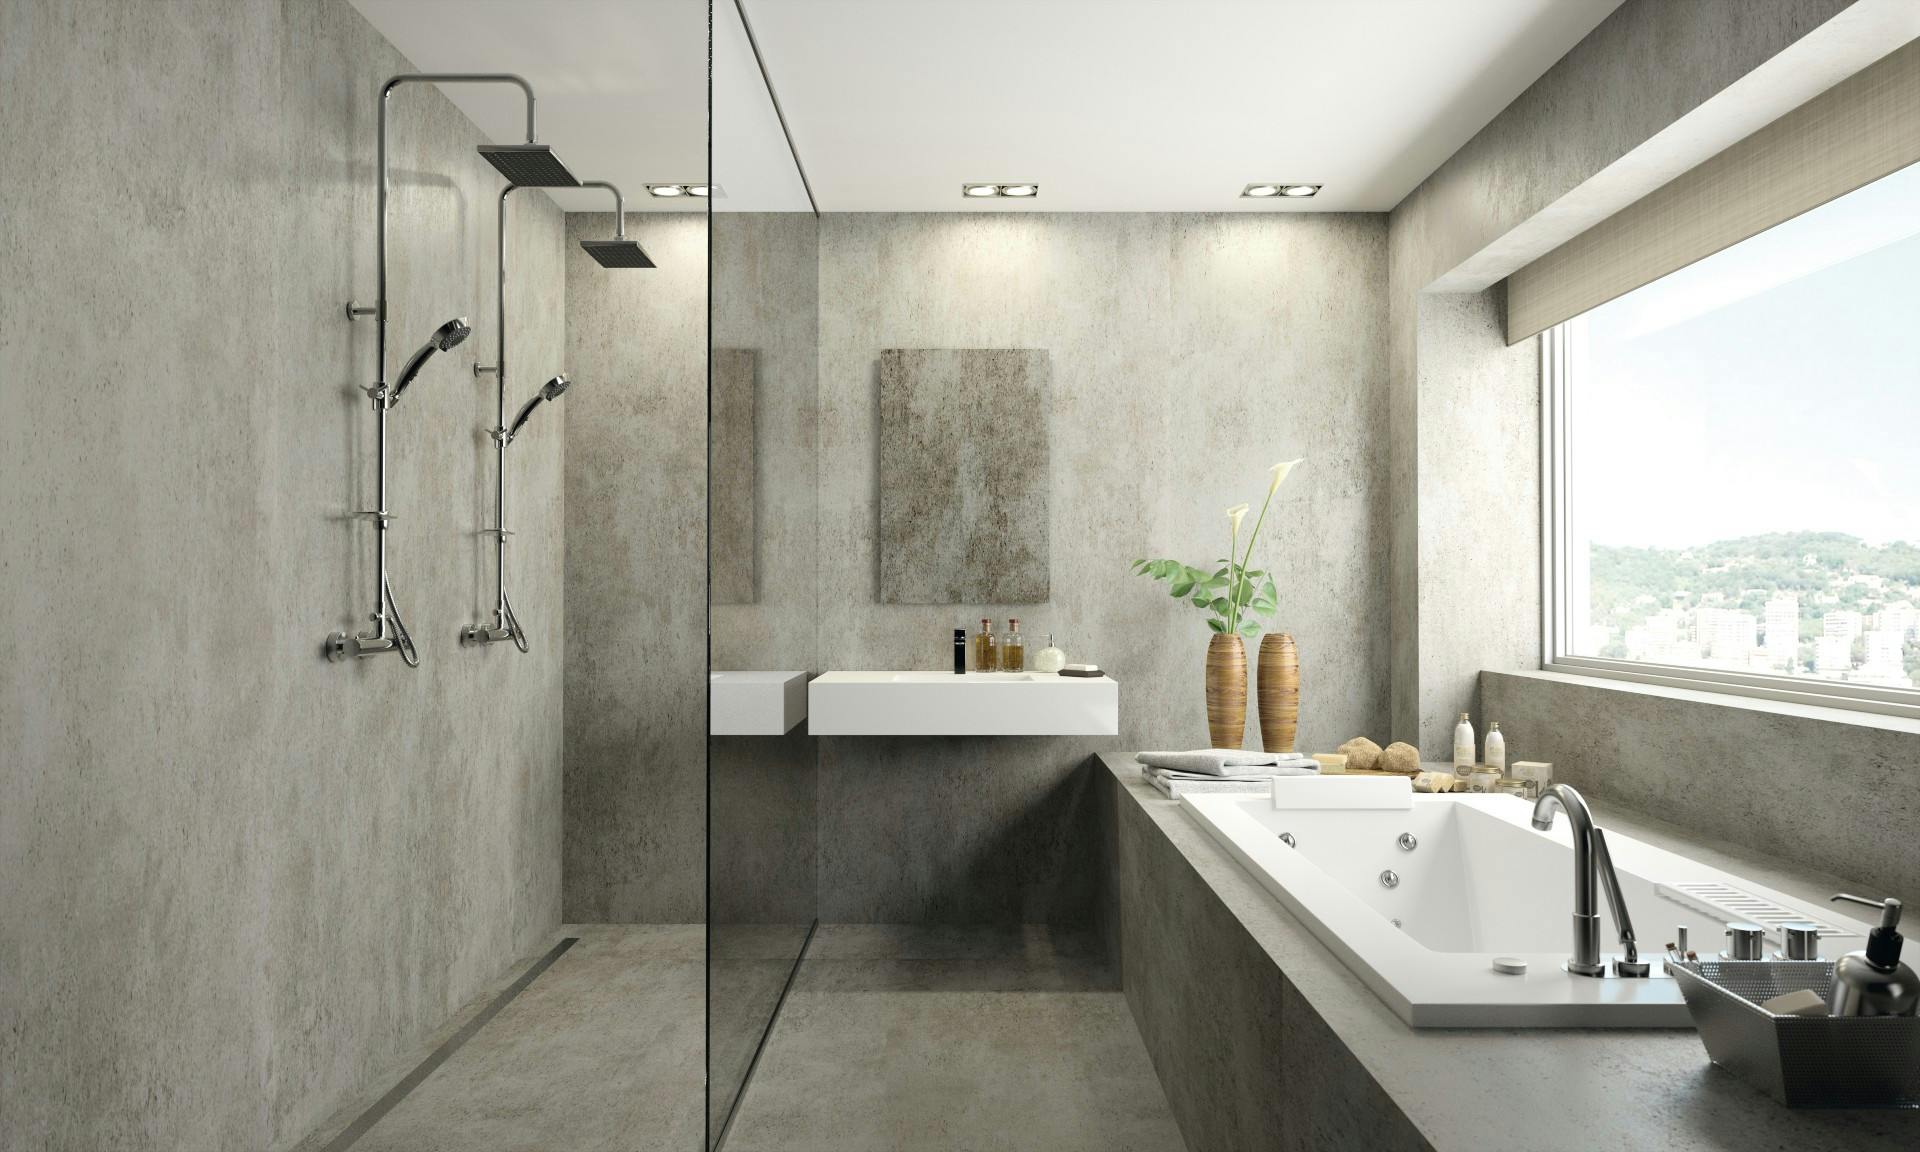 Grifería de ducha en calidad superior y diseño moderno